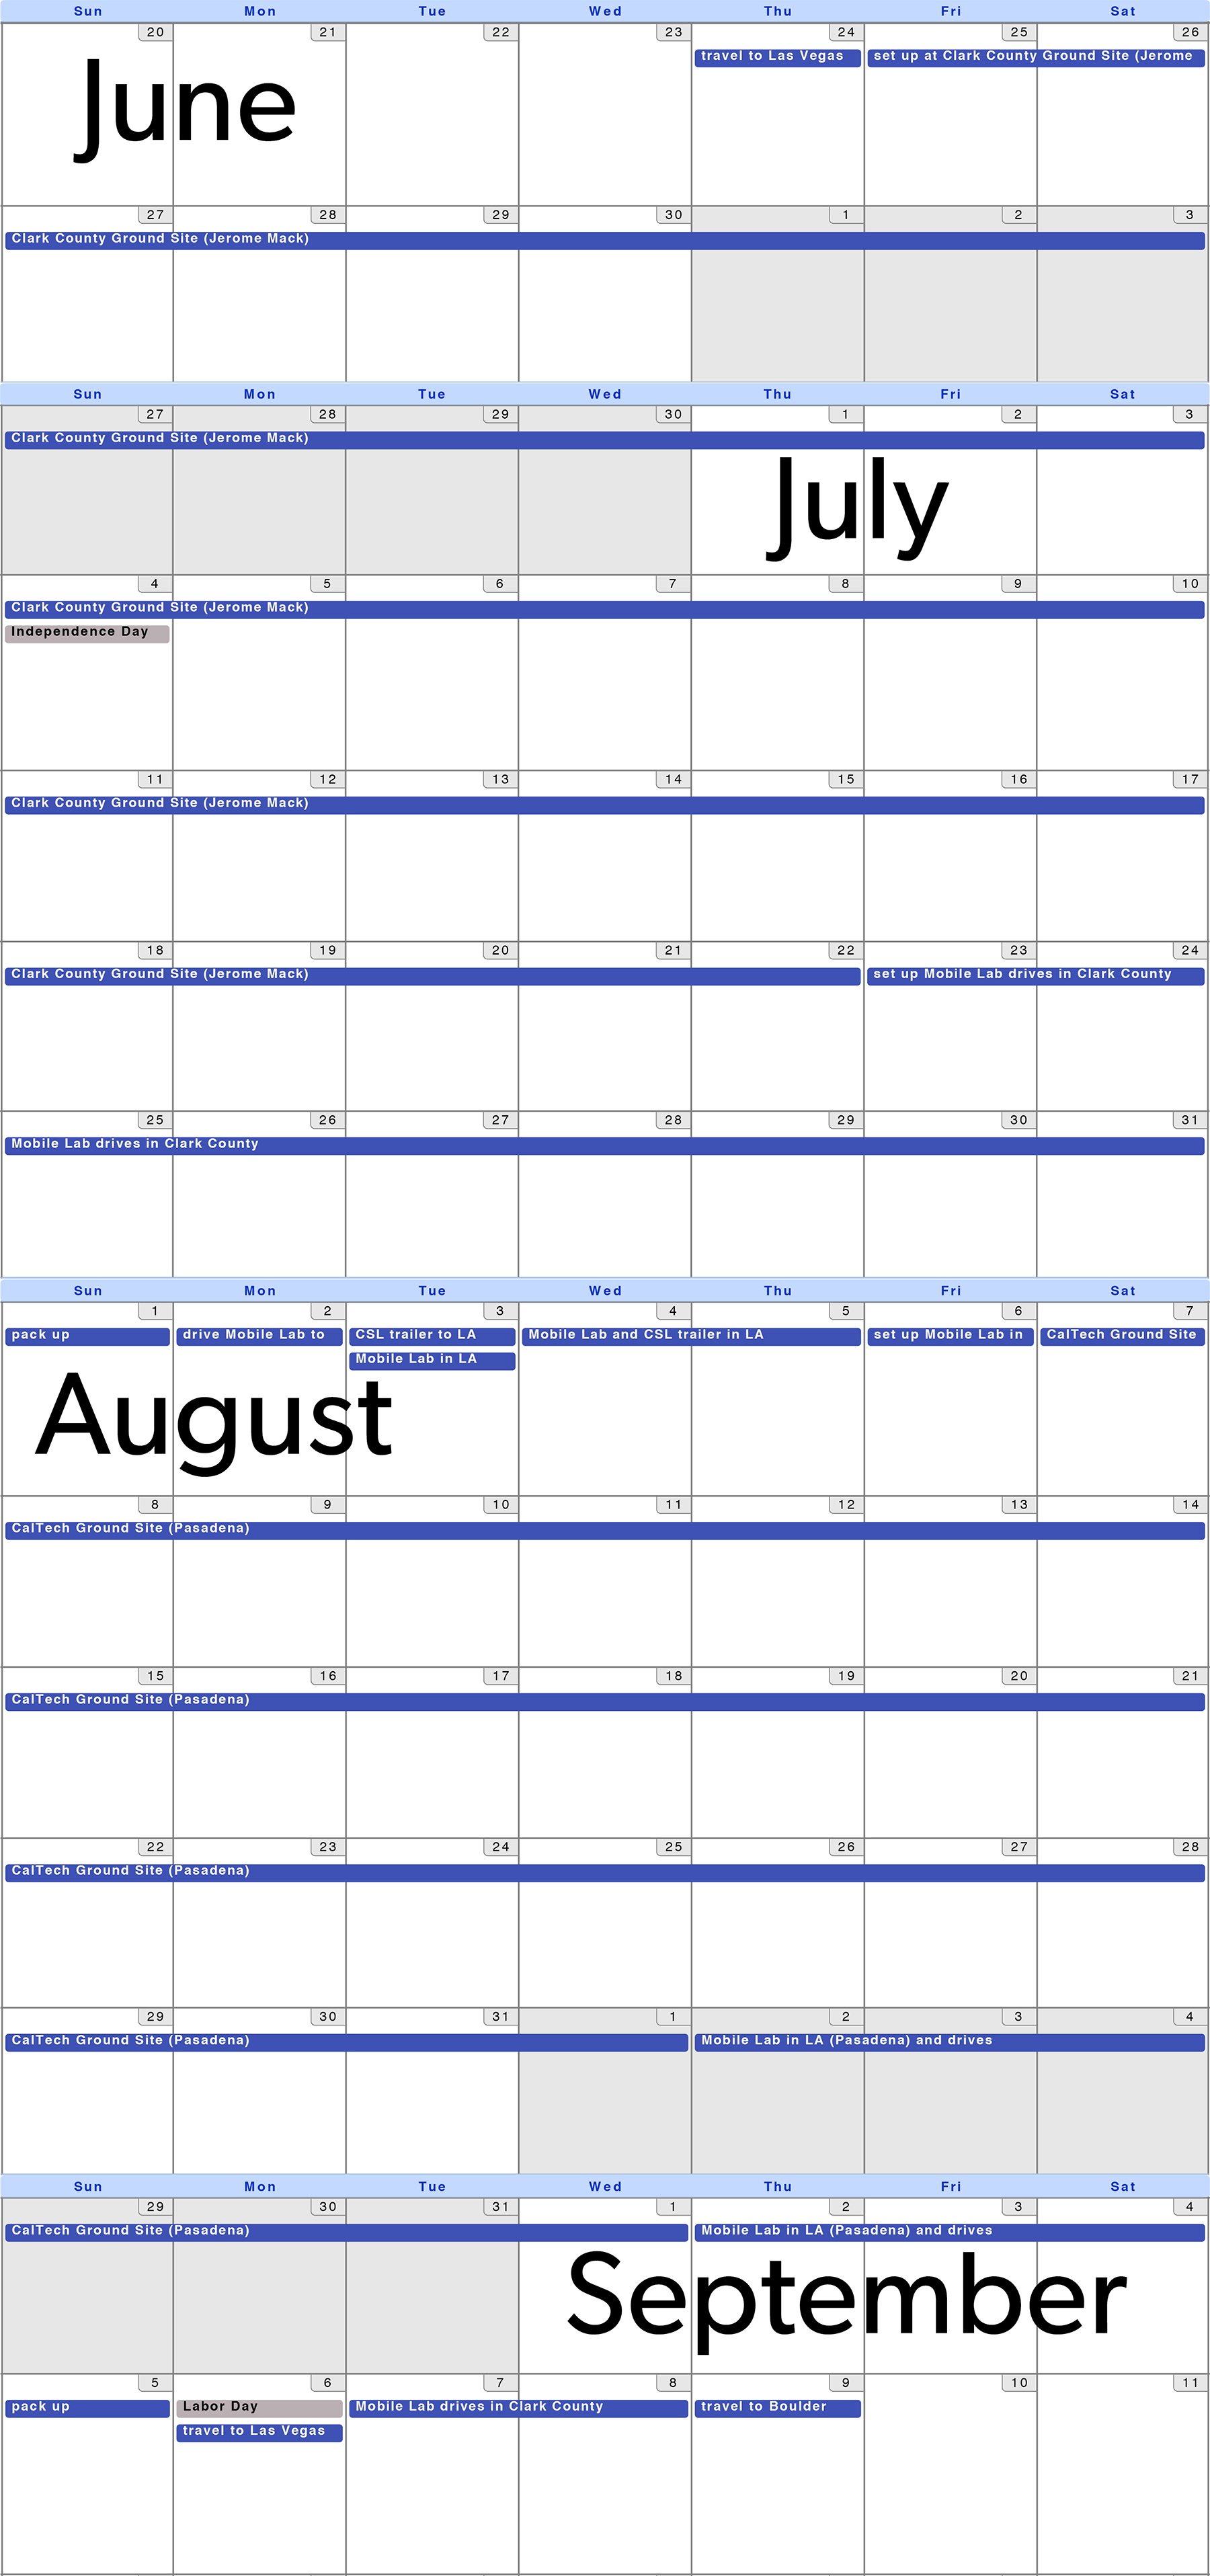 SUNVEx calendar for June-September 2021